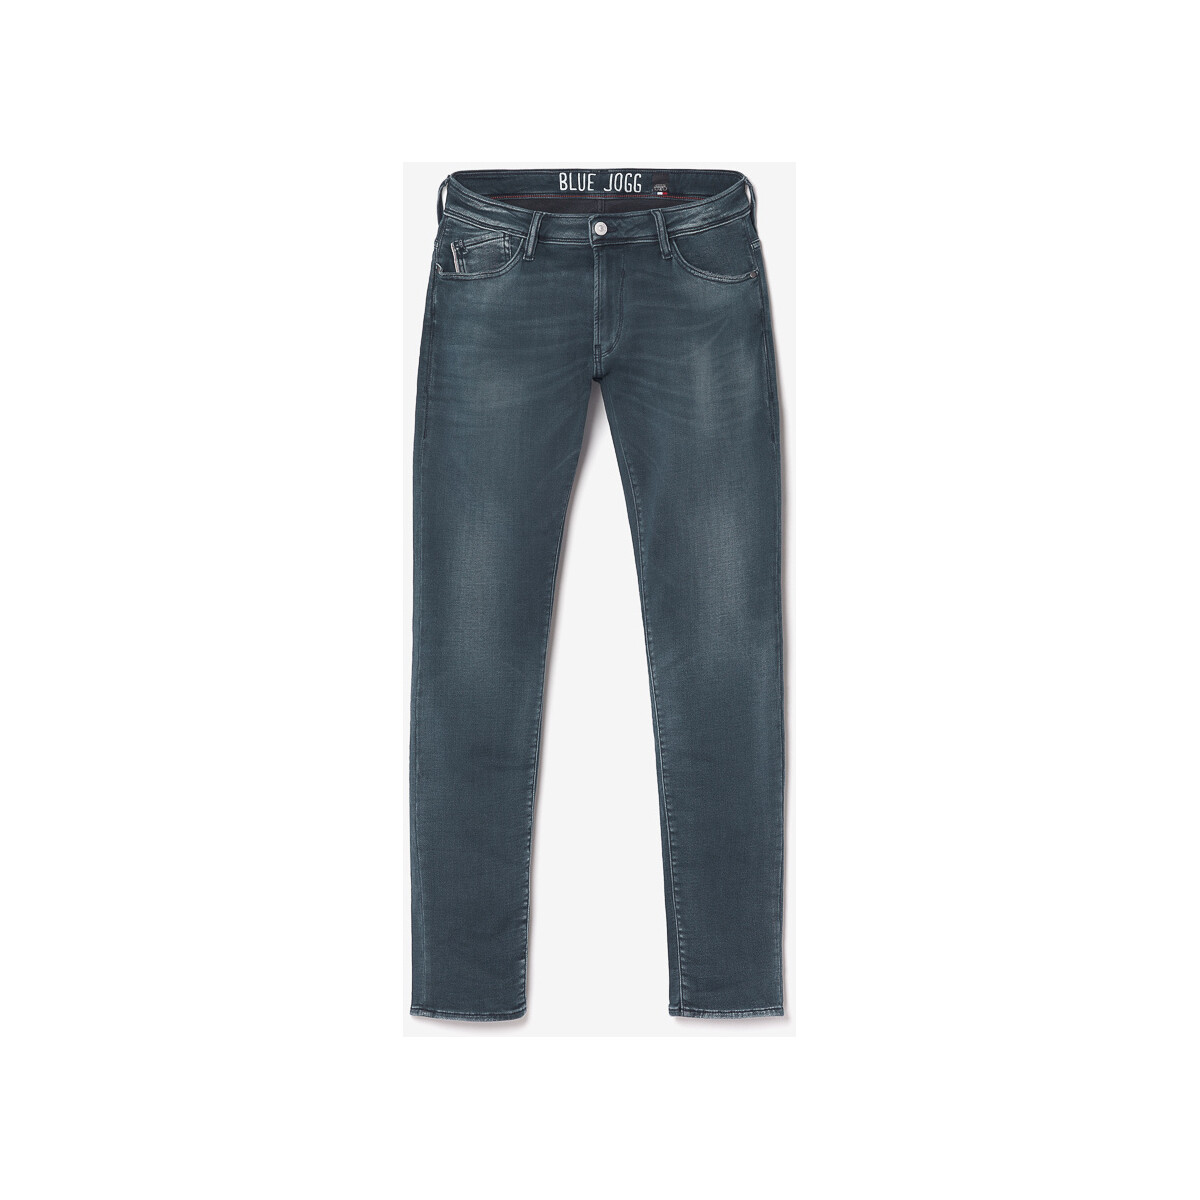 Le Temps des Cerises Bleu Jogg 700/11 adjusted jeans bleu-noir PzHfVMje